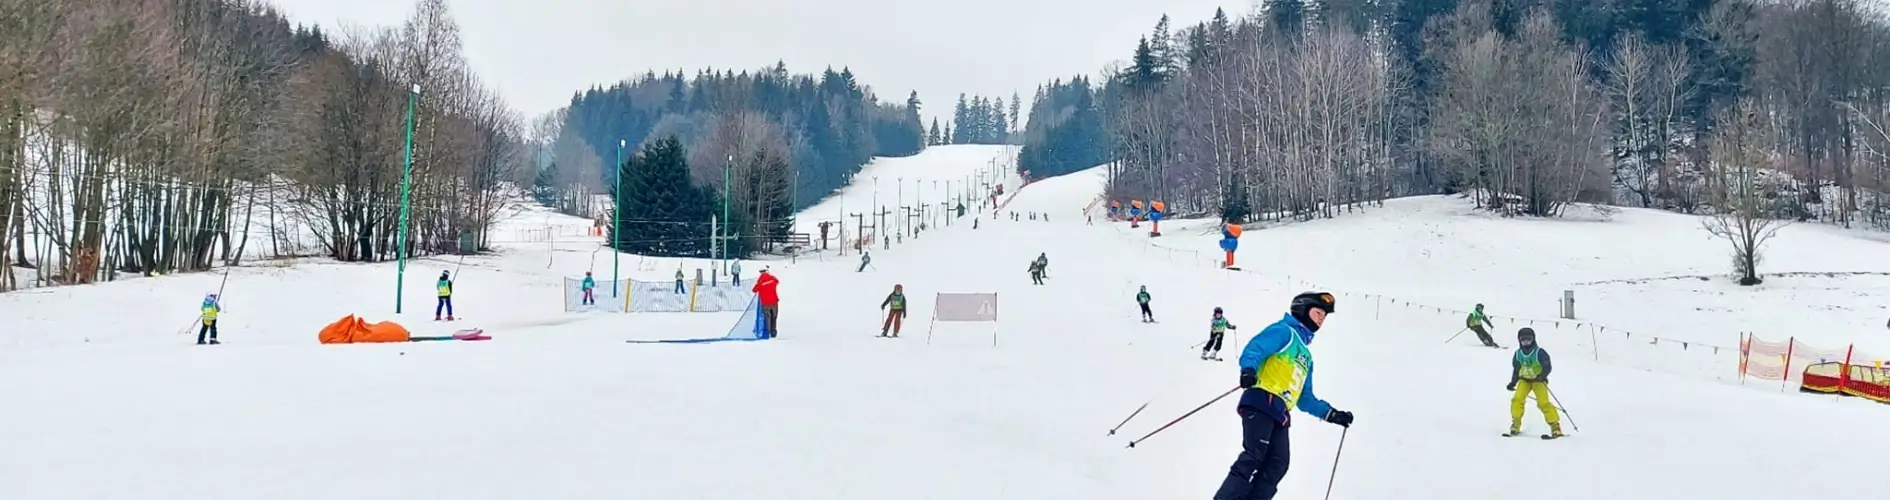 ludzie jeżdżący na nartach